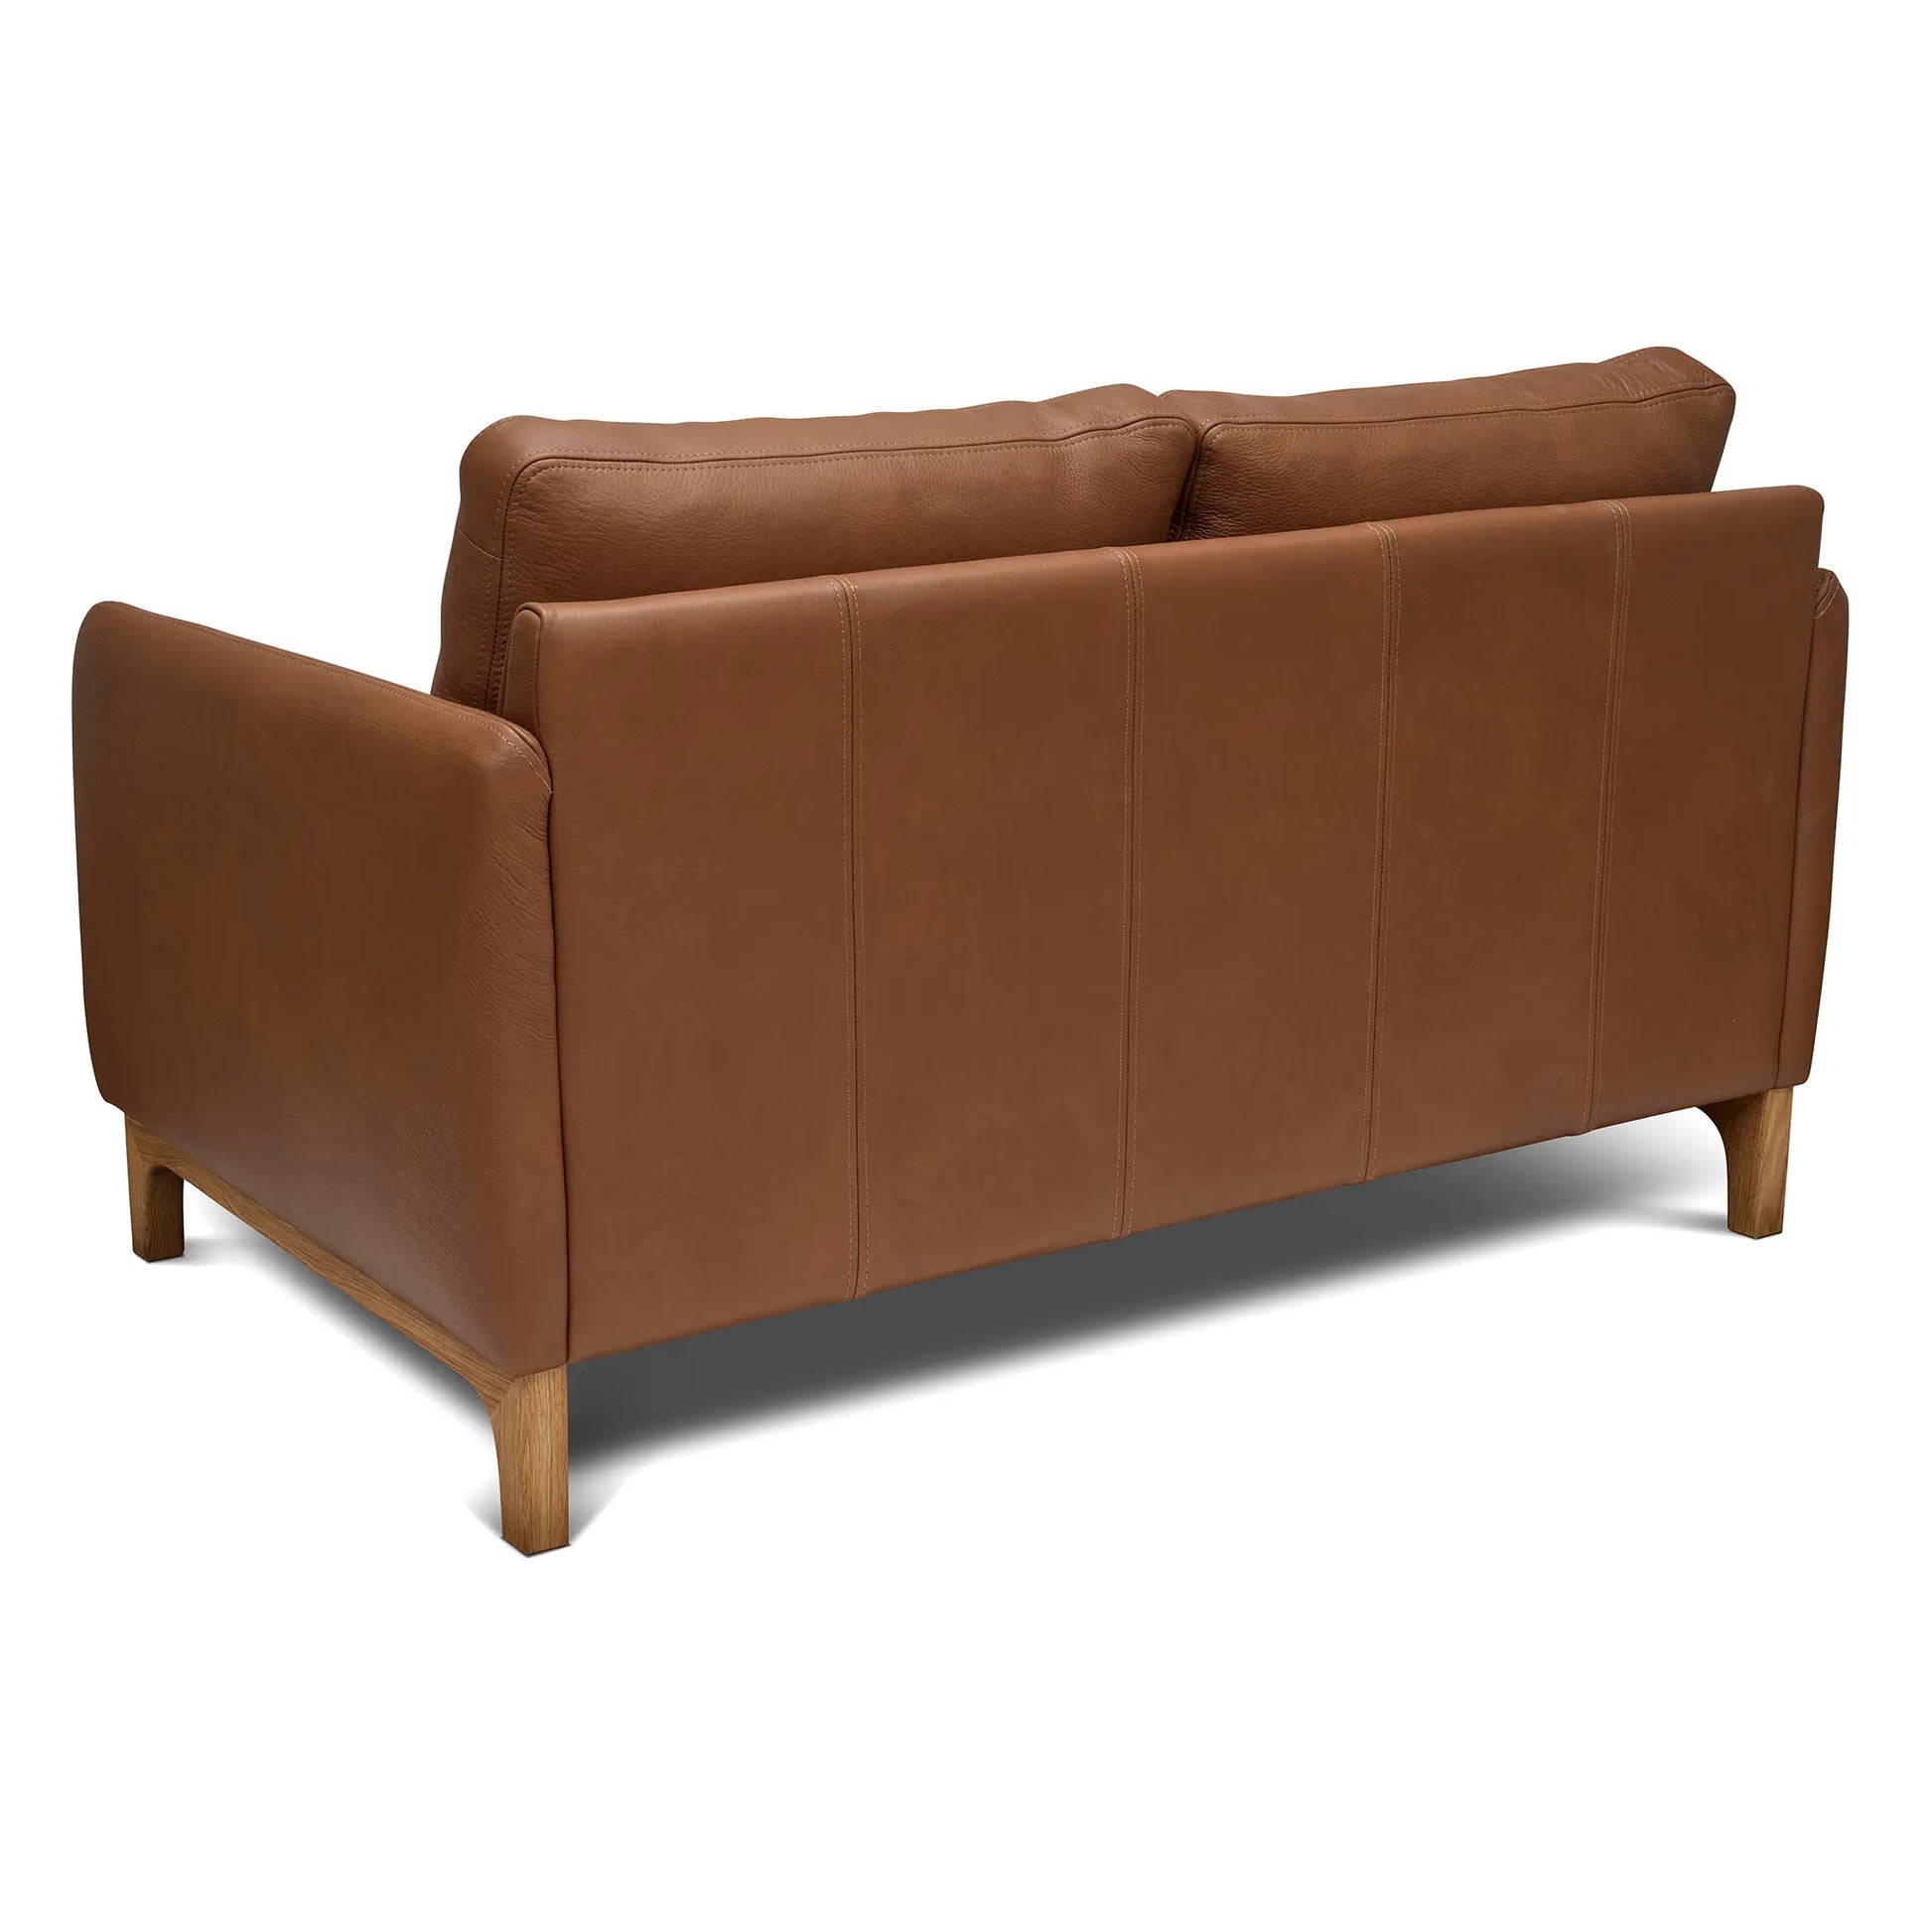 Vy bakifrån på en liten 2-sits soffa i brunt spårbart äkta skinn